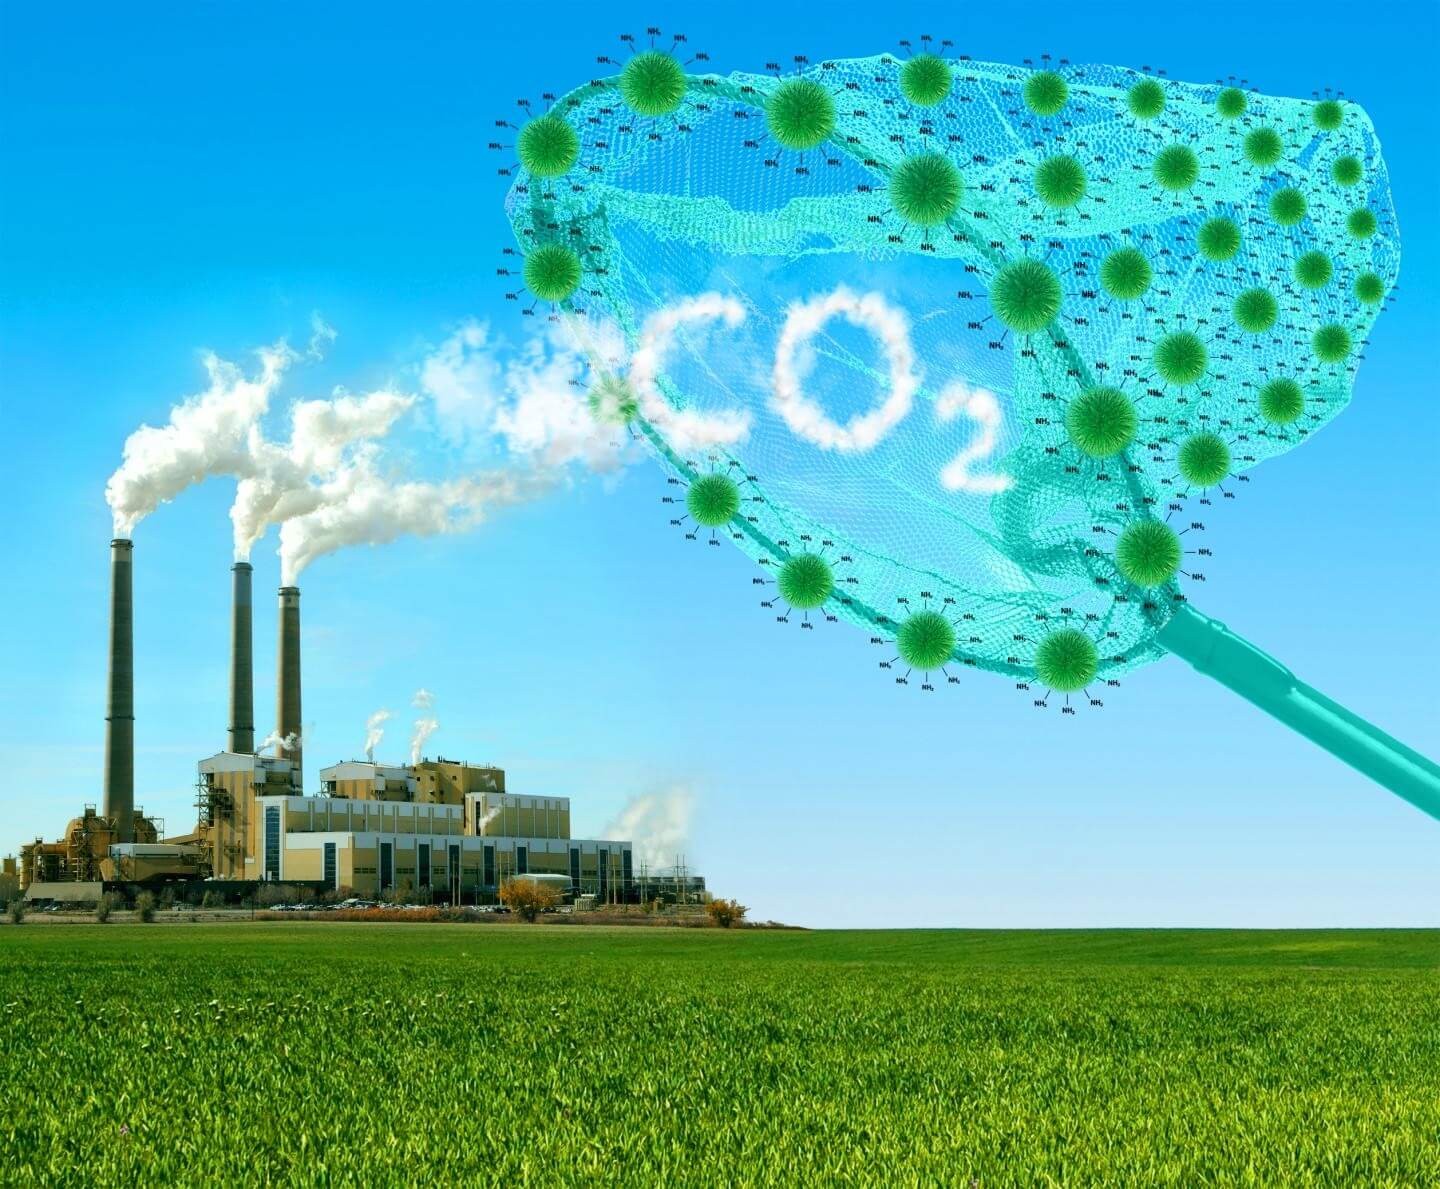 Khí CO2 được coi là một trong những loại khí gây ra hiện tượng hiệu ứng nhà kính như thế nào?
